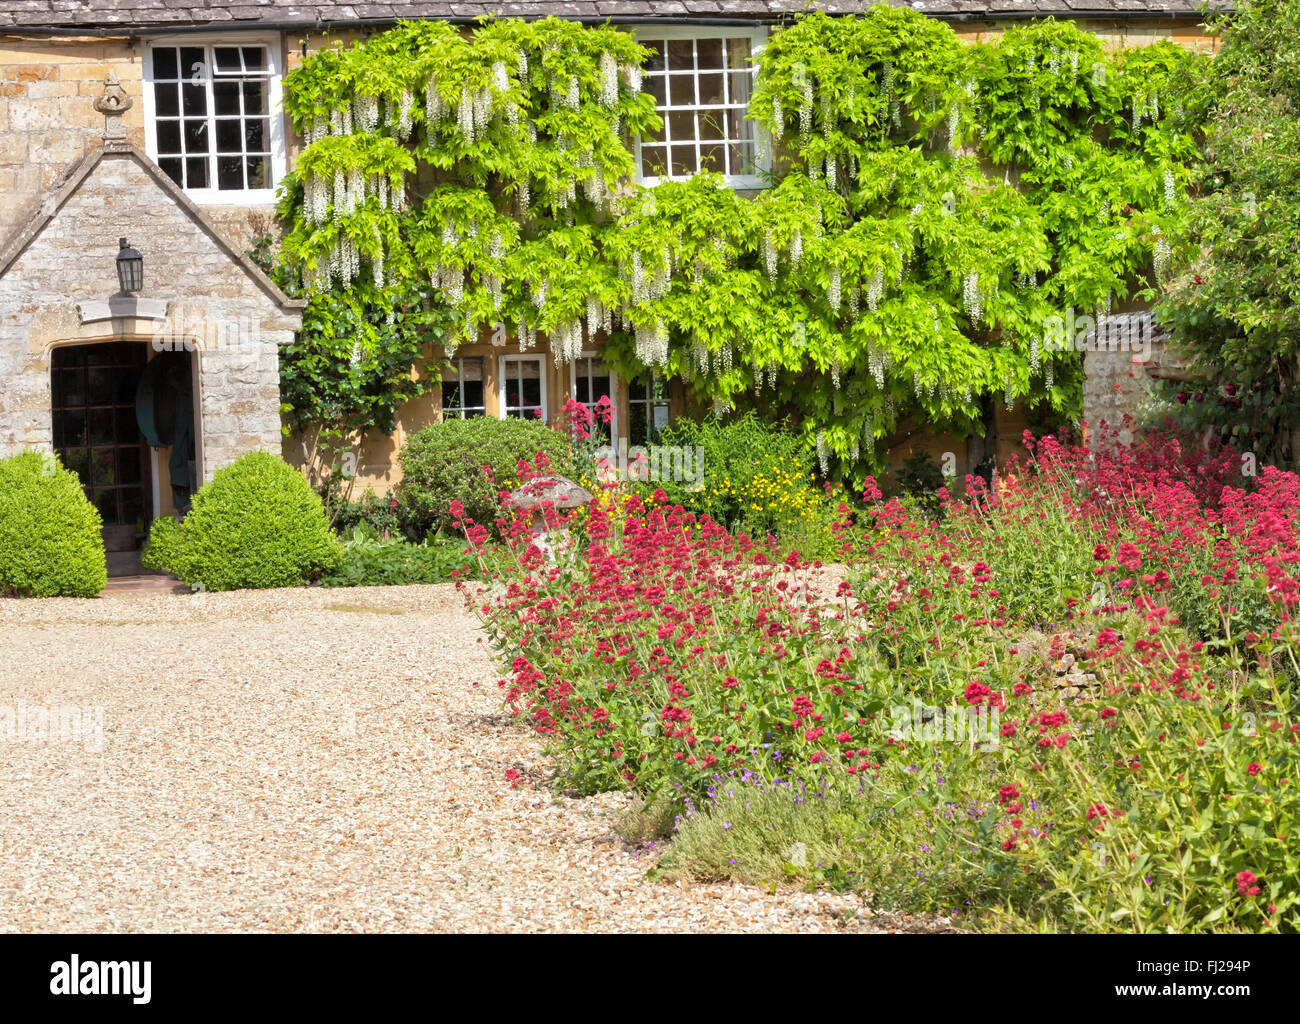 Cottage traditionnel anglais cour avec allée en gravier, de la pierre, de champignons jardin coloré de fleurs. Banque D'Images